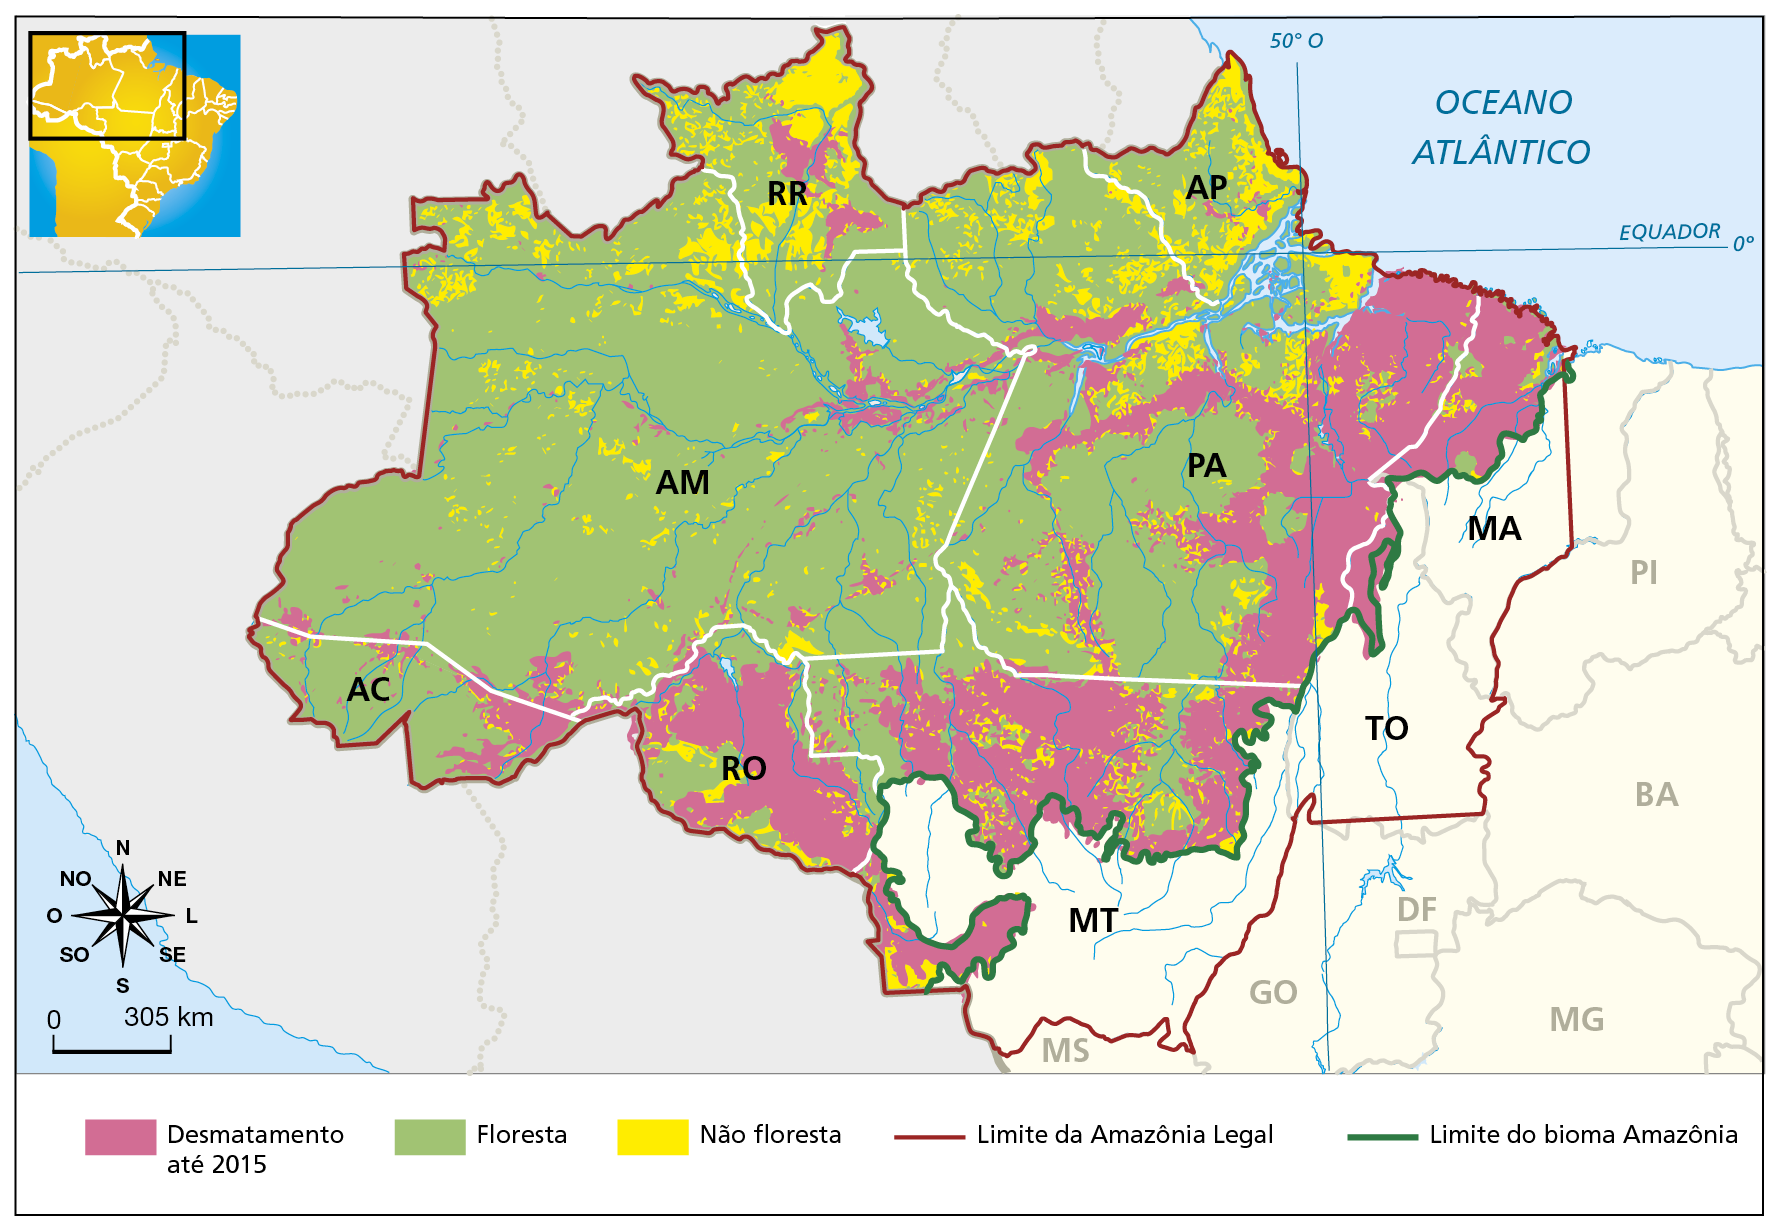 Mapa. Amazônia Legal: desmatamento Mapa da Amazônia representando áreas desmatadas, de floresta e não floresta nos estados. Além disso, o limite da Amazônia Legal e do bioma Amazônia são evidenciados por meio de  linhas coloridas. Desmatamento até 2015 (manchas na cor rosa): predominante em Rondônia; porção sul, norte e leste do Pará; porção leste do Acre; porção central de Roraima. Floresta (cor verde): predominante no estado do Amazonas e Acre, na porção central e oeste do Pará e do Amapá; áreas do este e sul de Roraima; pequenos trechos no norte e oeste de Rondônia; trechos no norte de Mato Grosso e alguns pontos do Maranhão. Não floresta (cor amarelo): predominante no estado de Roraima, Amapá e norte do Pará; pontos espalhados pelo Amazonas, sul do Pará, Rondônia, Acre, norte de Mato Grosso e pequenas áreas pontuais no oeste do Maranhão. Limite da Amazônia Legal (linha vermelho escuro): acompanha os limites entre territórios de países sul-americanos e os estados de Rondônia, Acre, Amazonas, Roraima, Pará, Amapá, além  de grande parte do Maranhão, quase todo o estado de Tocantins e todo o território de Mato Grosso, Limite do bioma Amazônia (linha verde): acompanha os limites entre territórios de países sul-americanos e os estados de Rondônia, Acre, Amazonas, Roraima, Pará, Amapá, além de trecho oeste do Maranhão e porção norte e oeste de Mato Grosso. Abaixo, à esquerda, rosa dos ventos e escala de 0 a 305 quilômetros.